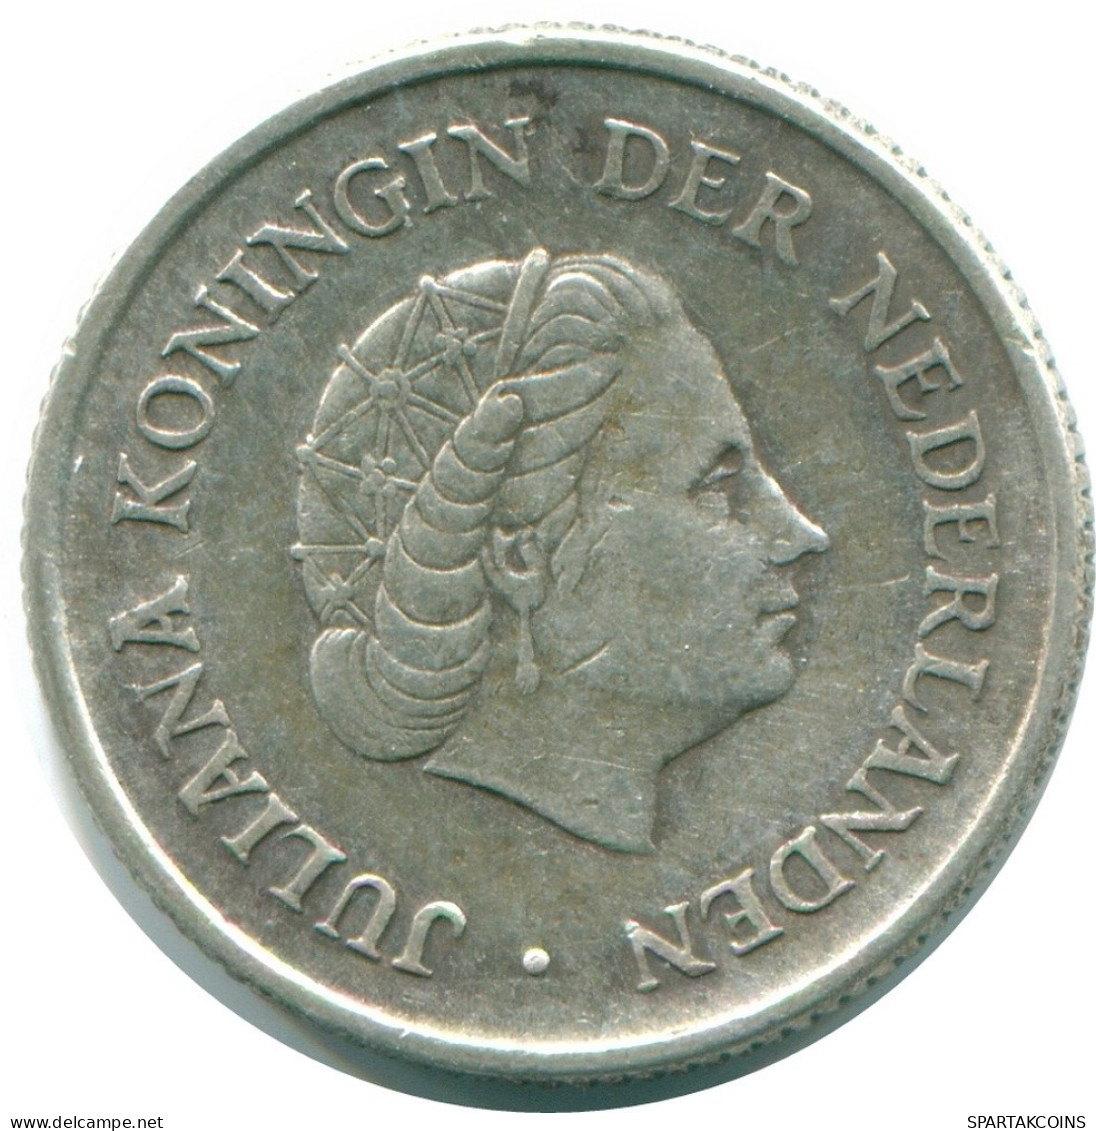 1/4 GULDEN 1965 NIEDERLÄNDISCHE ANTILLEN SILBER Koloniale Münze #NL11398.4.D.A - Antillas Neerlandesas